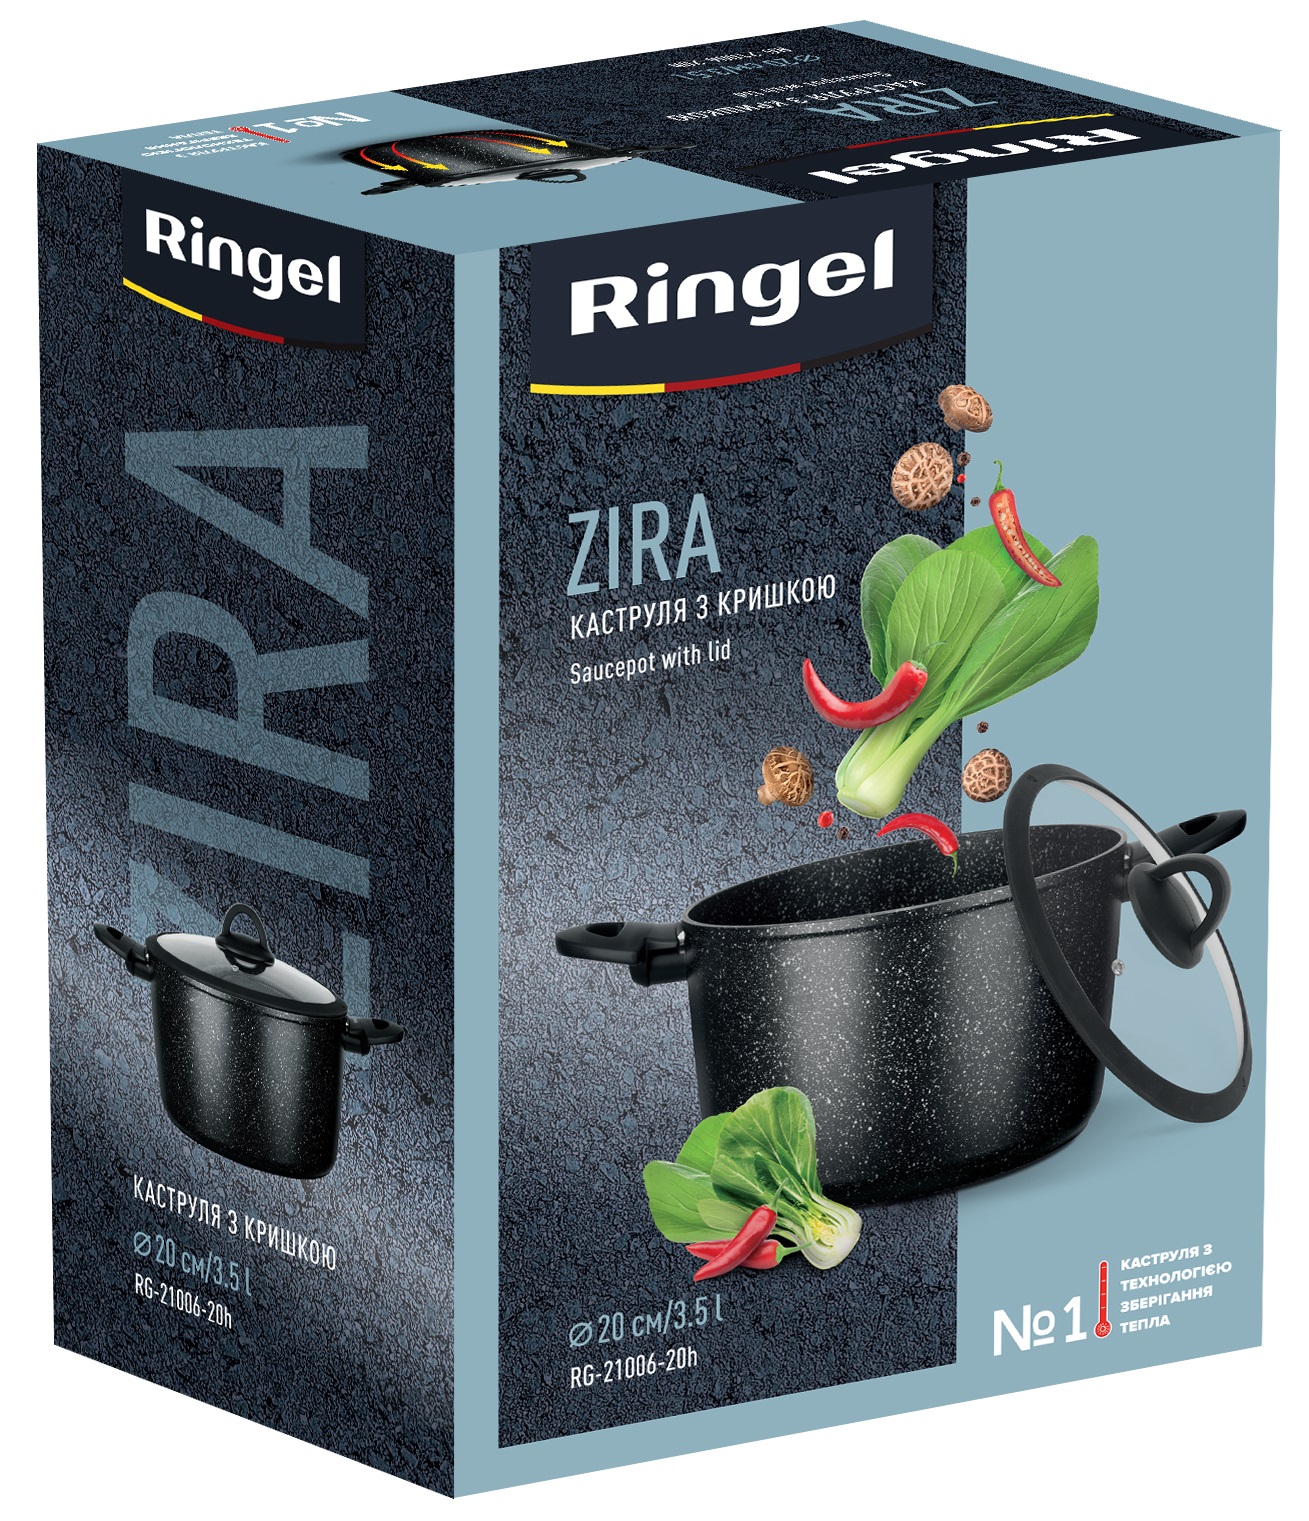 Каструля RINGEL RG-21006-20h Zira 3.5 л, недорого